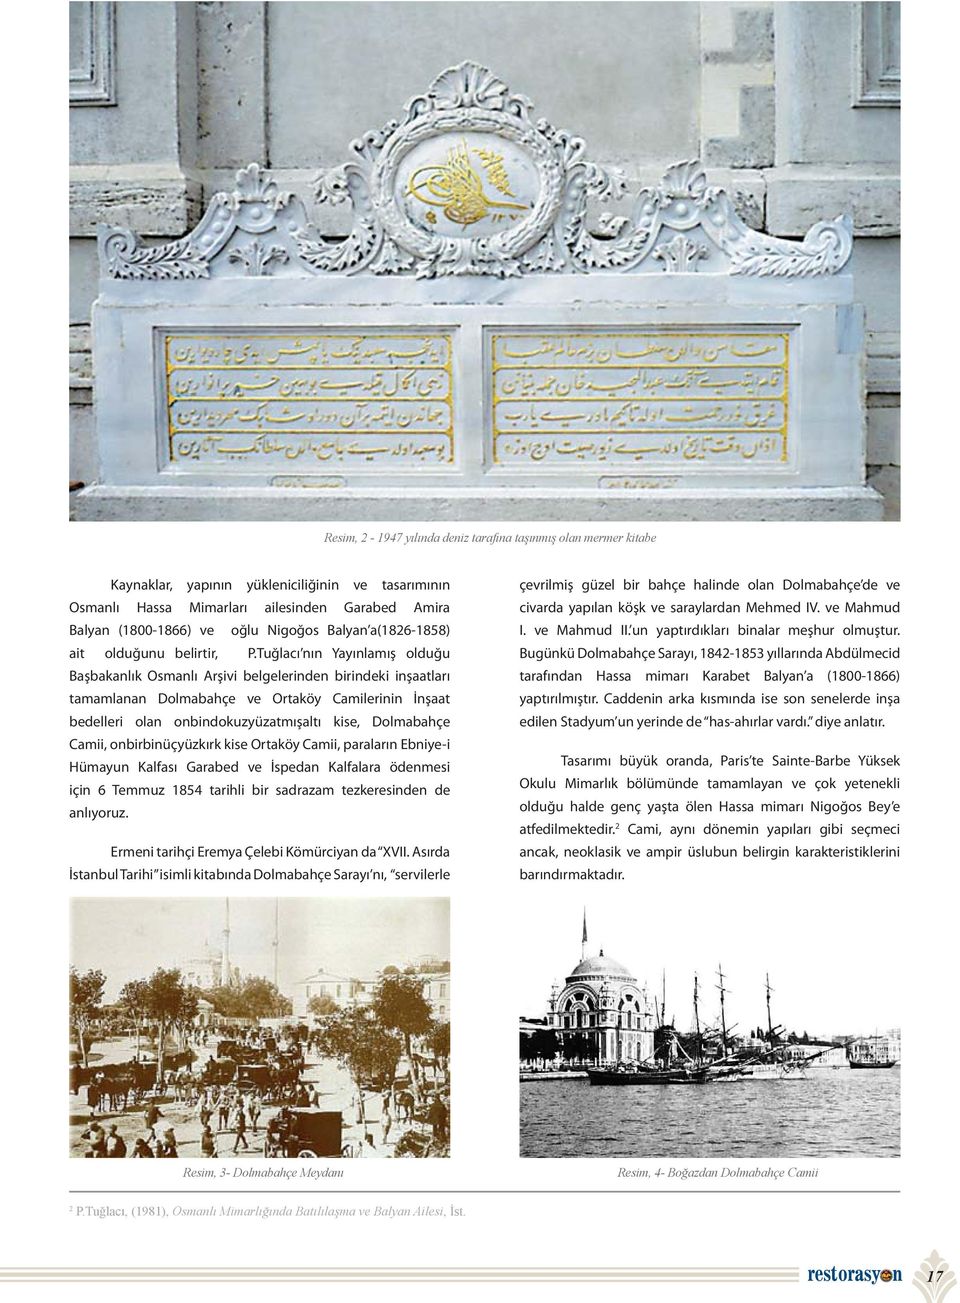 Tuğlacı nın Yayınlamış olduğu Başbakanlık Osmanlı Arşivi belgelerinden birindeki inşaatları tamamlanan Dolmabahçe ve Ortaköy Camilerinin İnşaat bedelleri olan onbindokuzyüzatmışaltı kise, Dolmabahçe